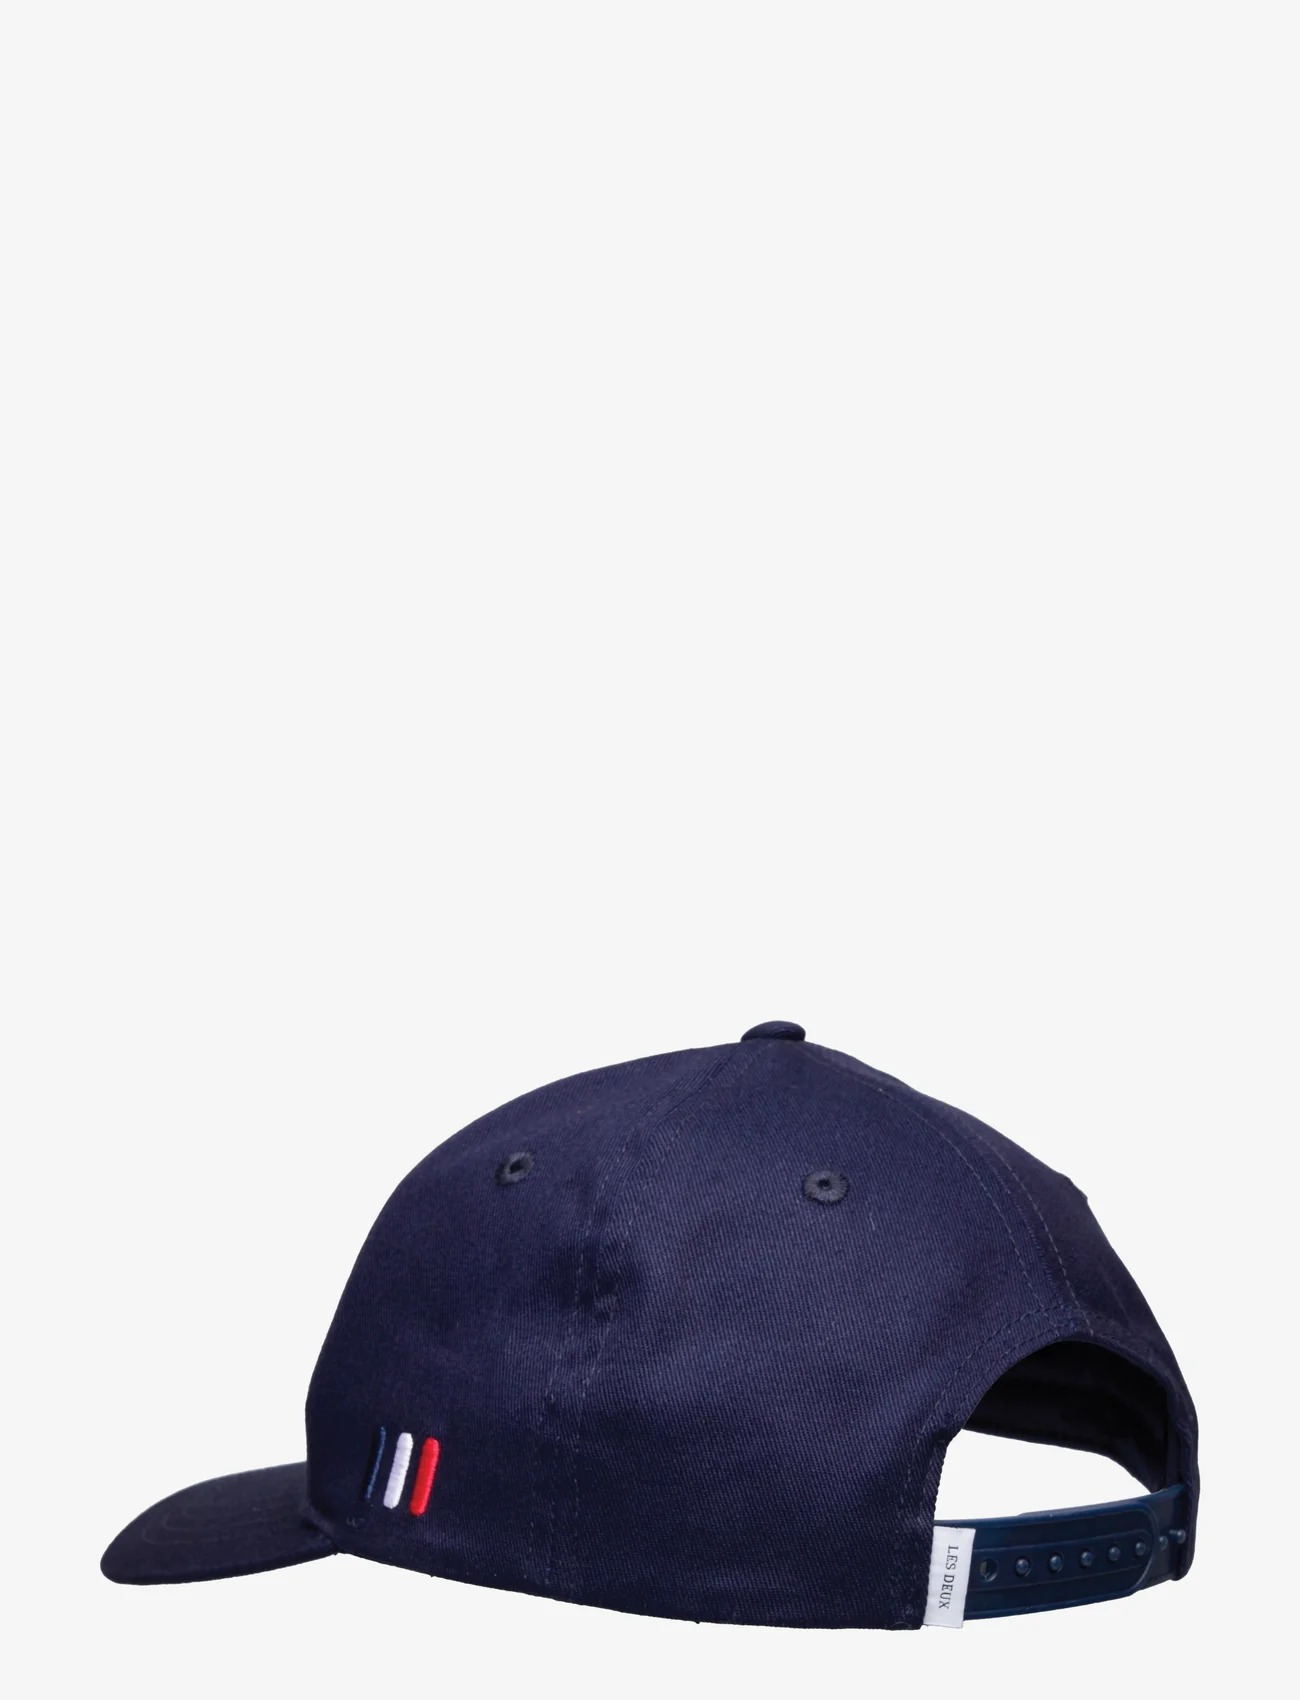 Les Deux - Piece Baseball Cap SMU - caps - dark navy/mint-charcoal - 1